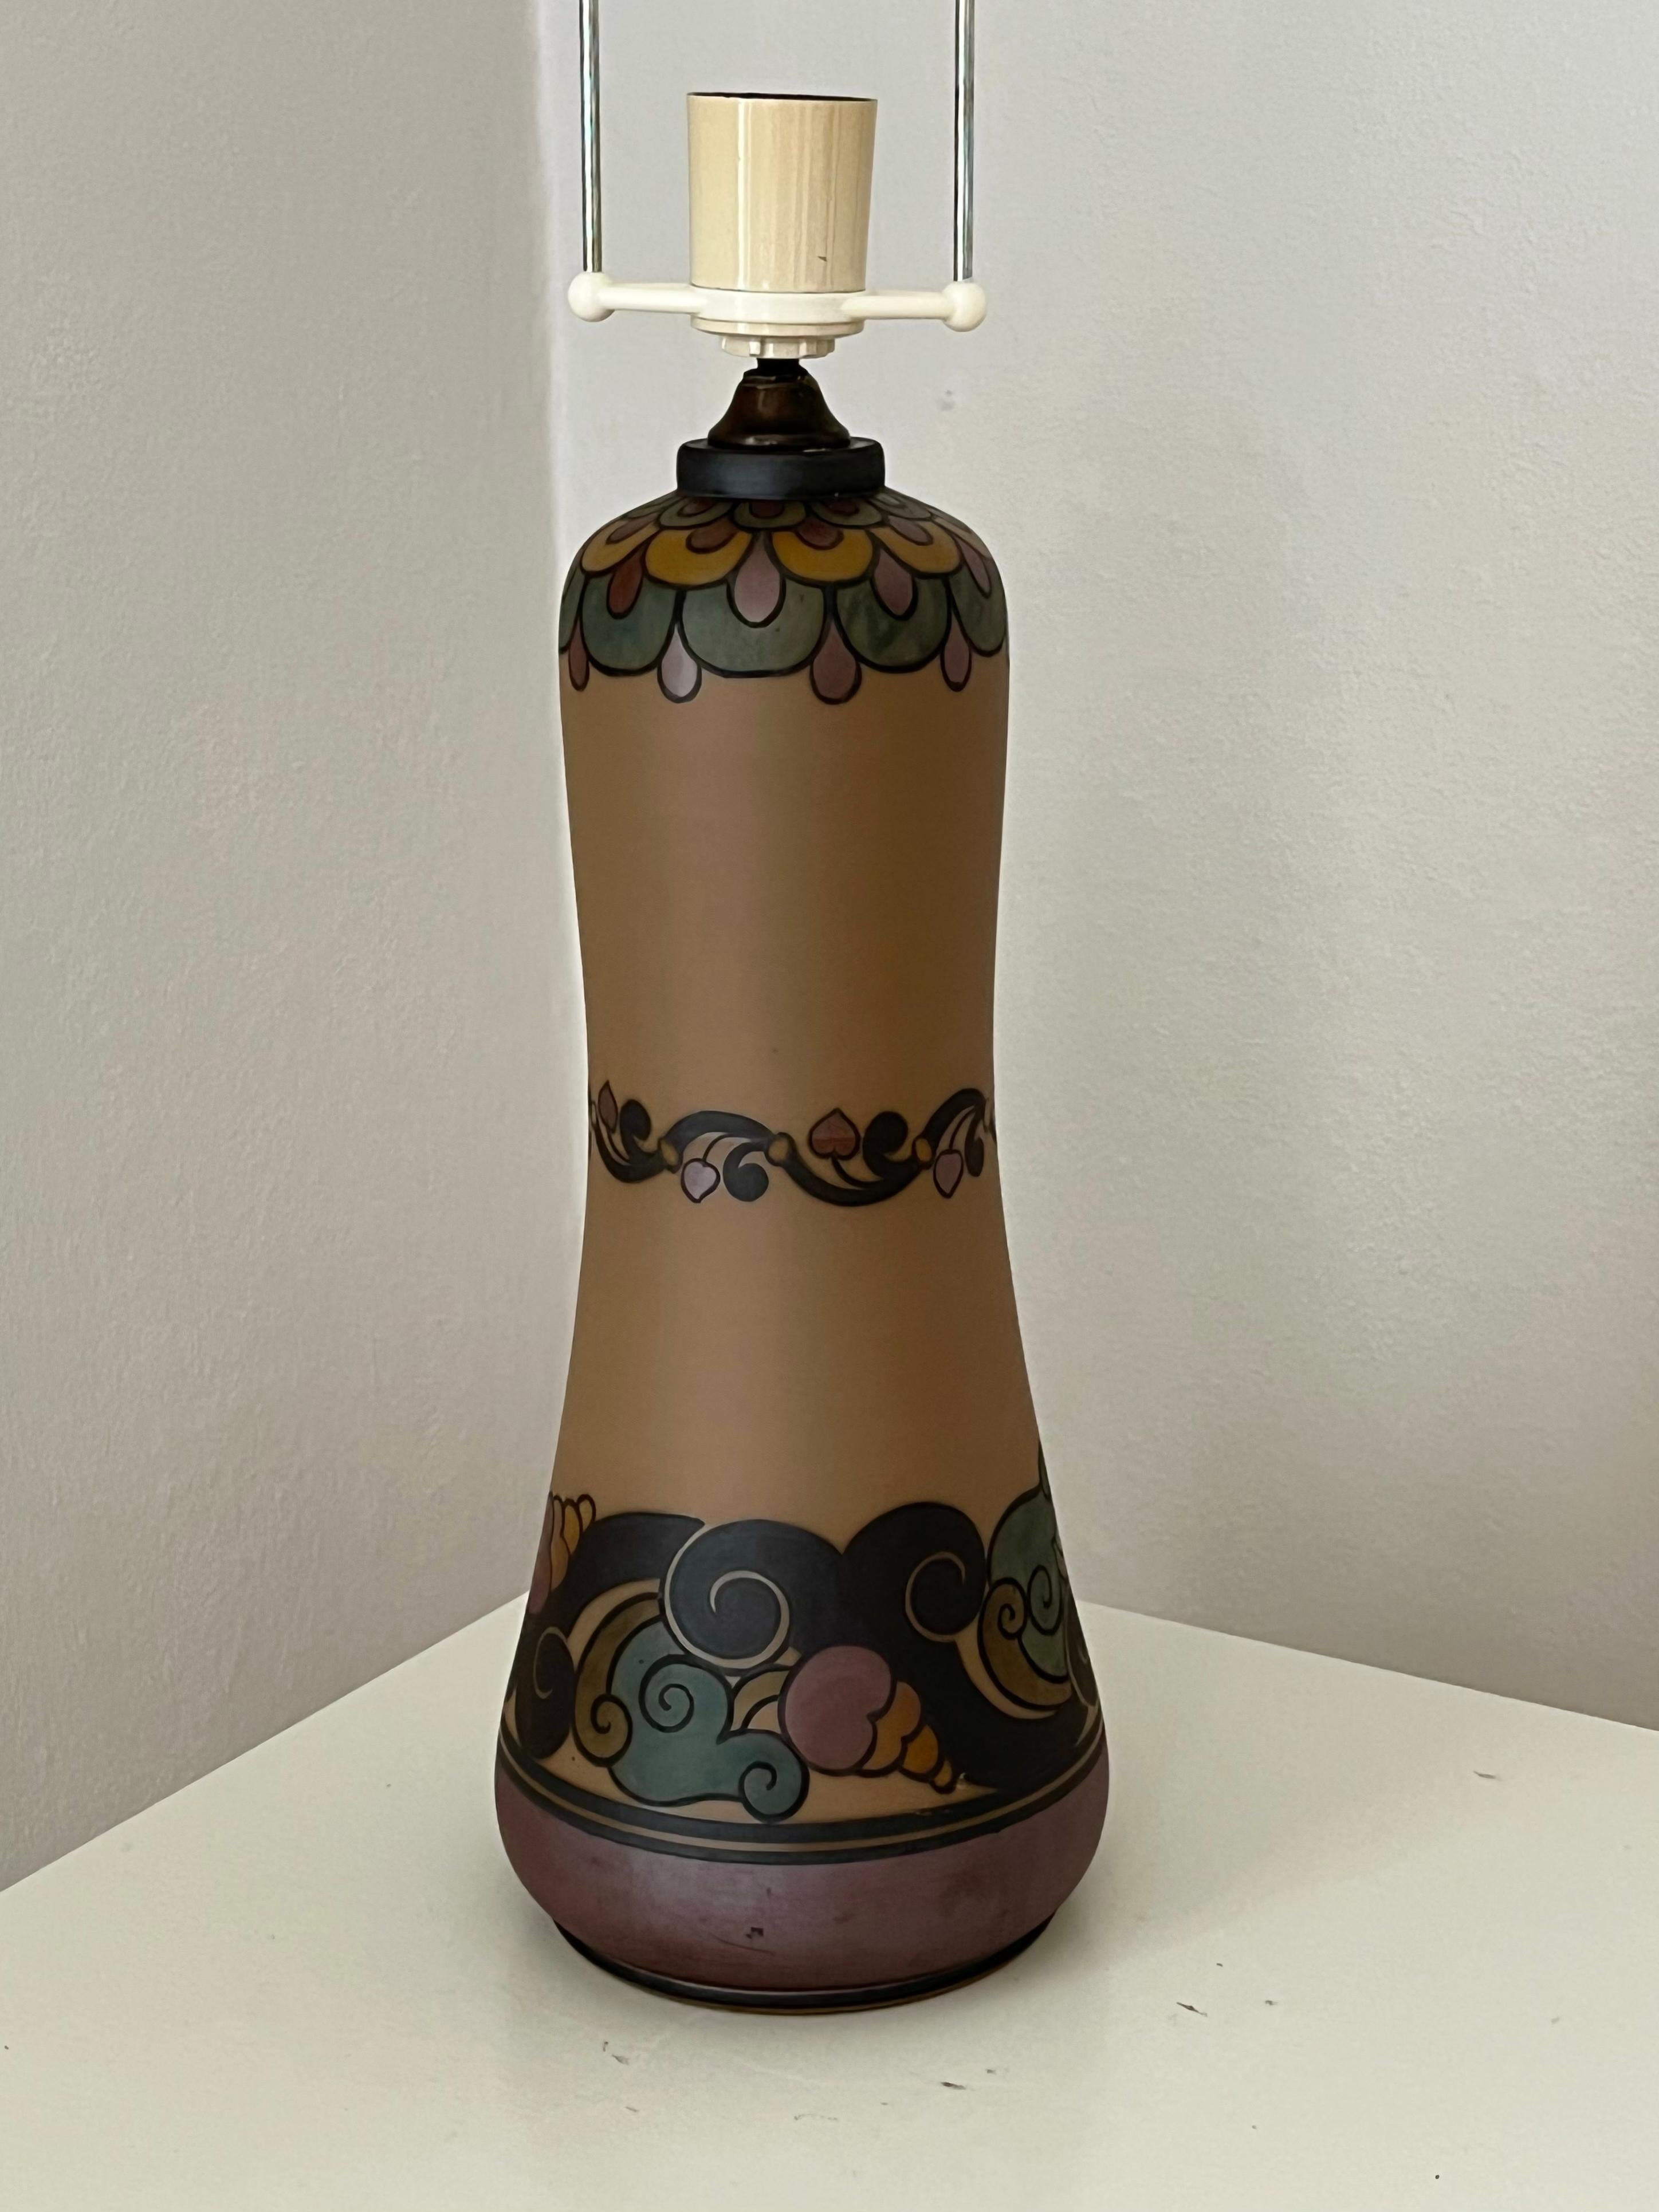 Art Nouveau 1930s Danish art nouveau ceramic hand decorated table lamp by L. Hjort For Sale